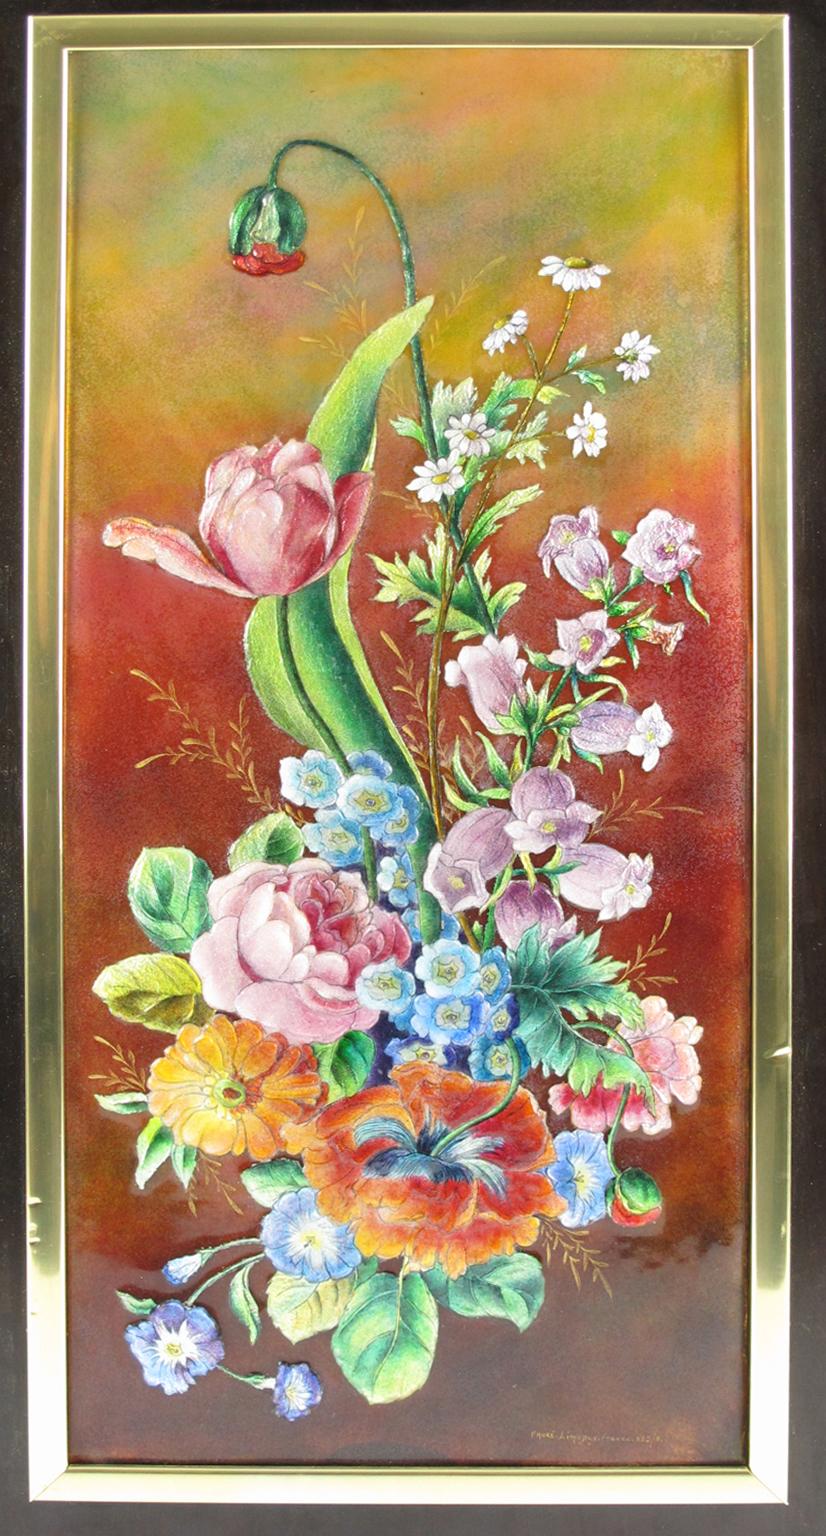 Das Studio Camille Faure hat in den 1950er Jahren in Limoges diese schöne dekorative Emailleplakette handgefertigt. Dies ist eine limitierte Auflage, nummeriert zwei von acht produzierten Exemplaren. Das Blumendesign mit dem Namen 